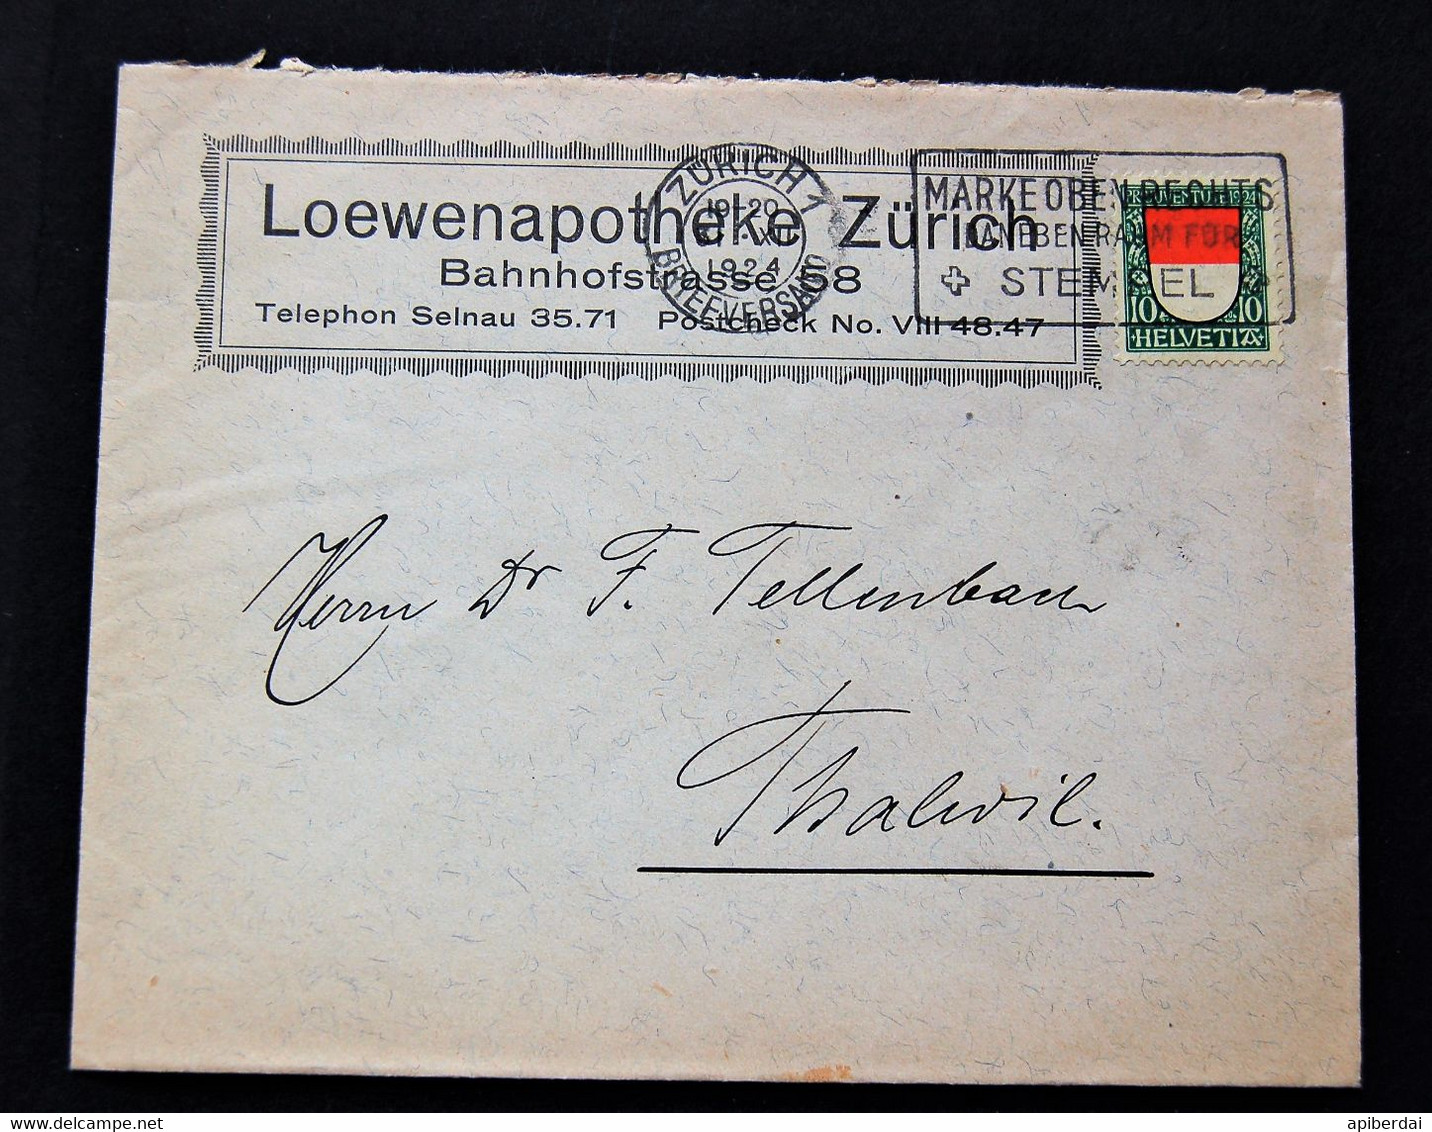 Suisse Switzerland - Timbre De 10c 1924 Pro Patria Seul Sur Lettre - Briefe U. Dokumente